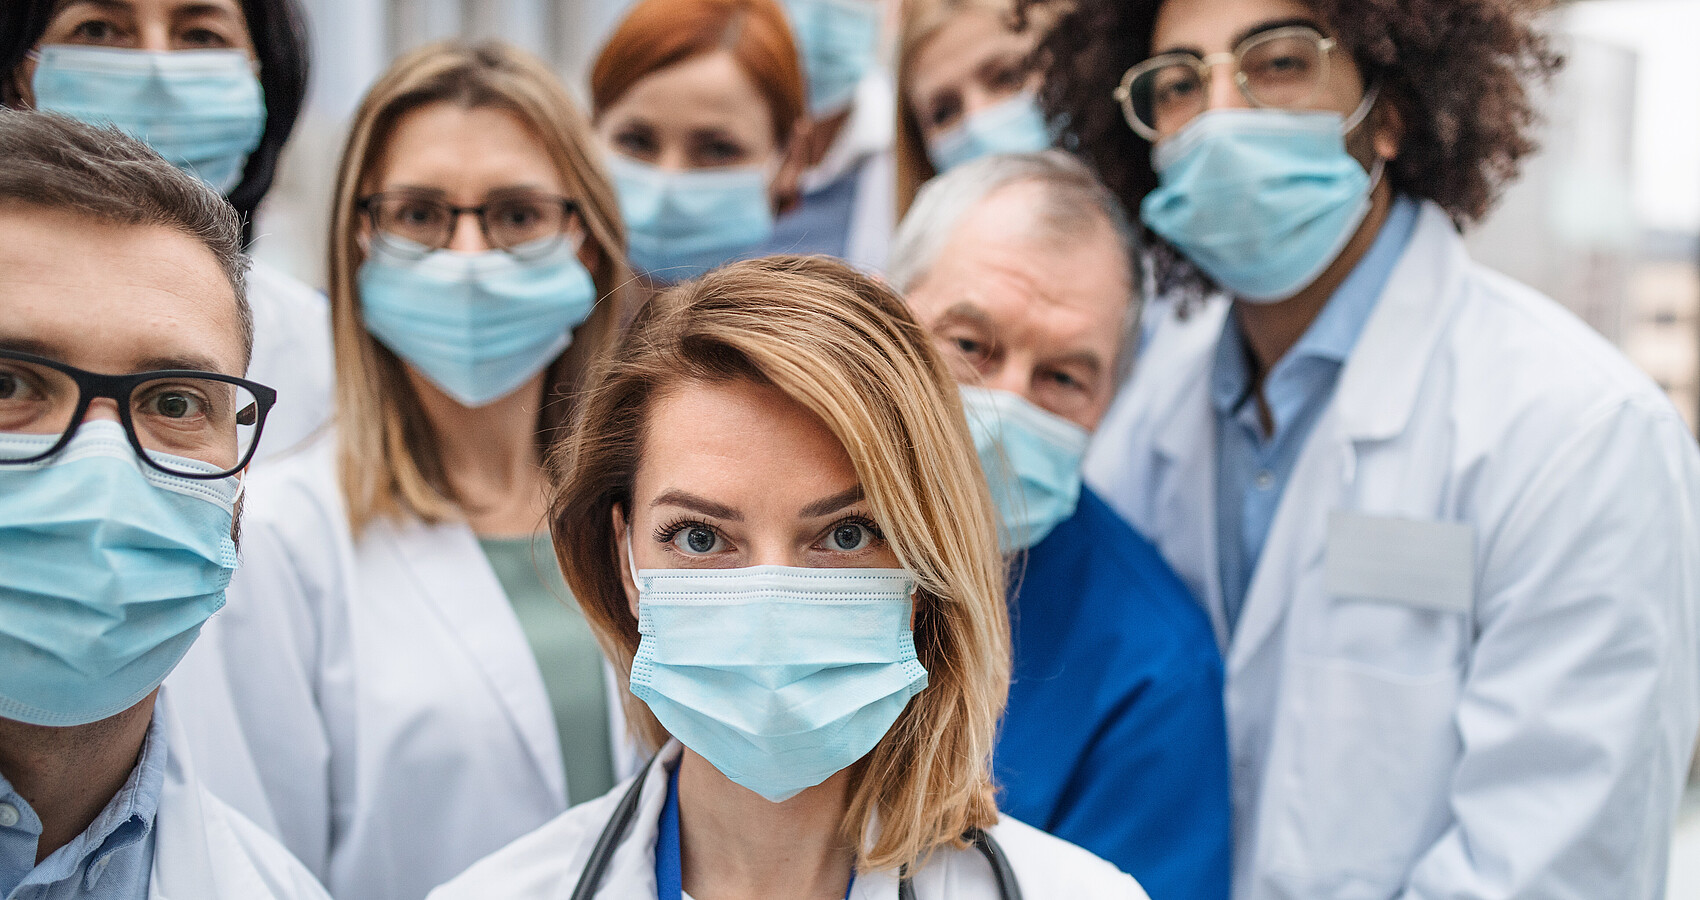 Symbolbild Medizinisches Personal - Menschengruppe mit Schutzmasken